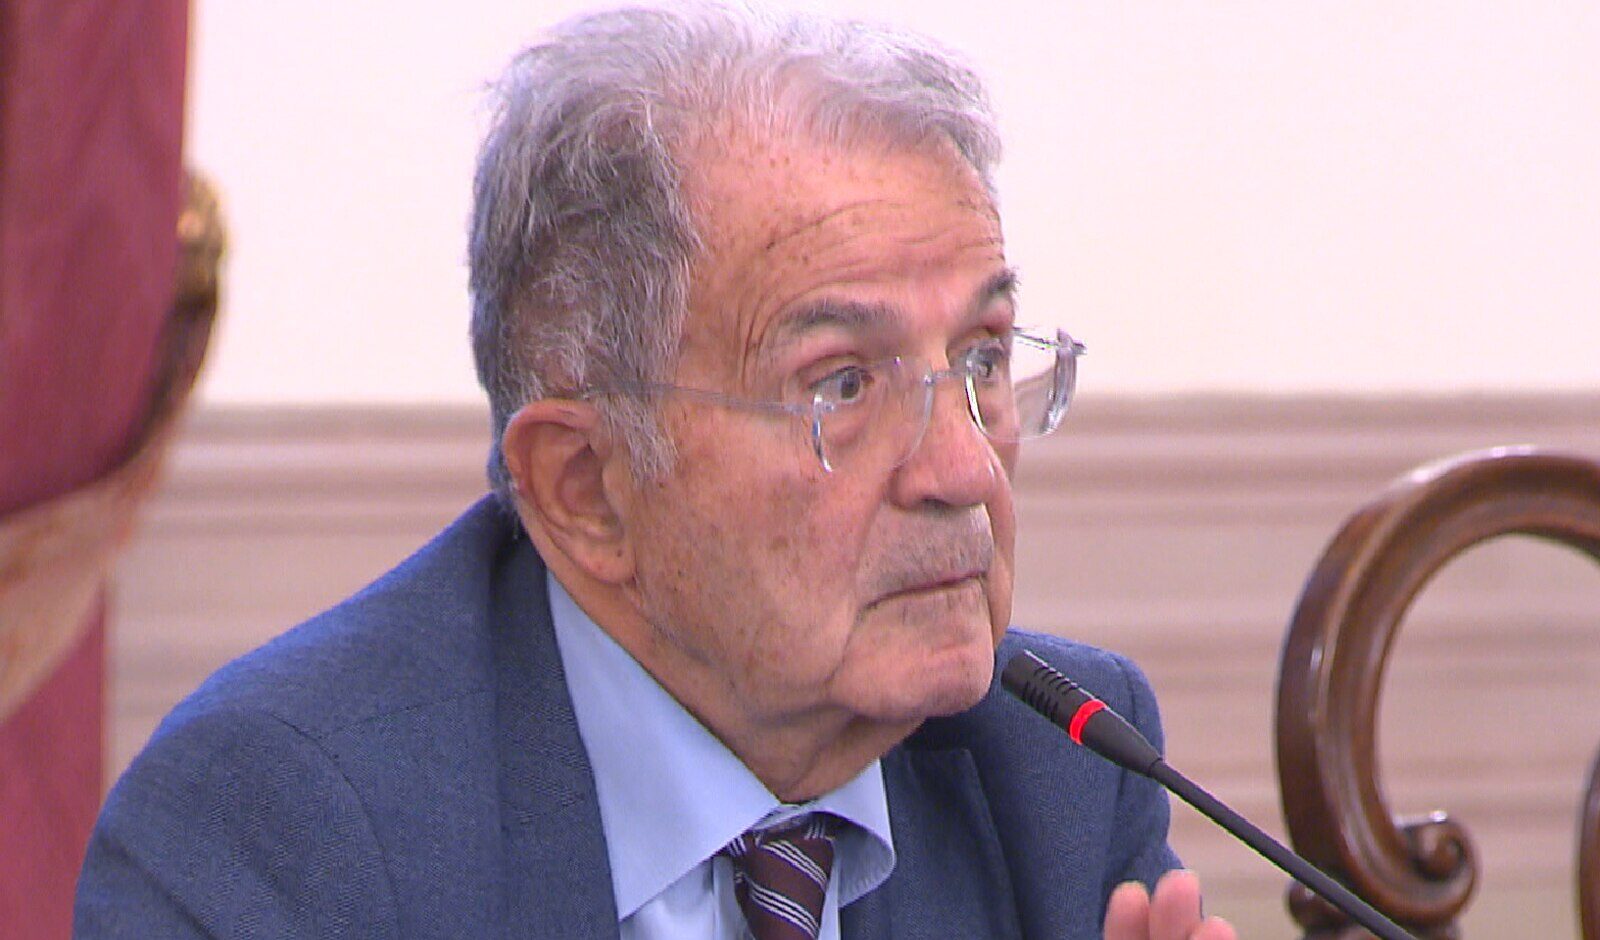 La denuncia di Prodi: "In Italia c'è la resa dello stato sociale"